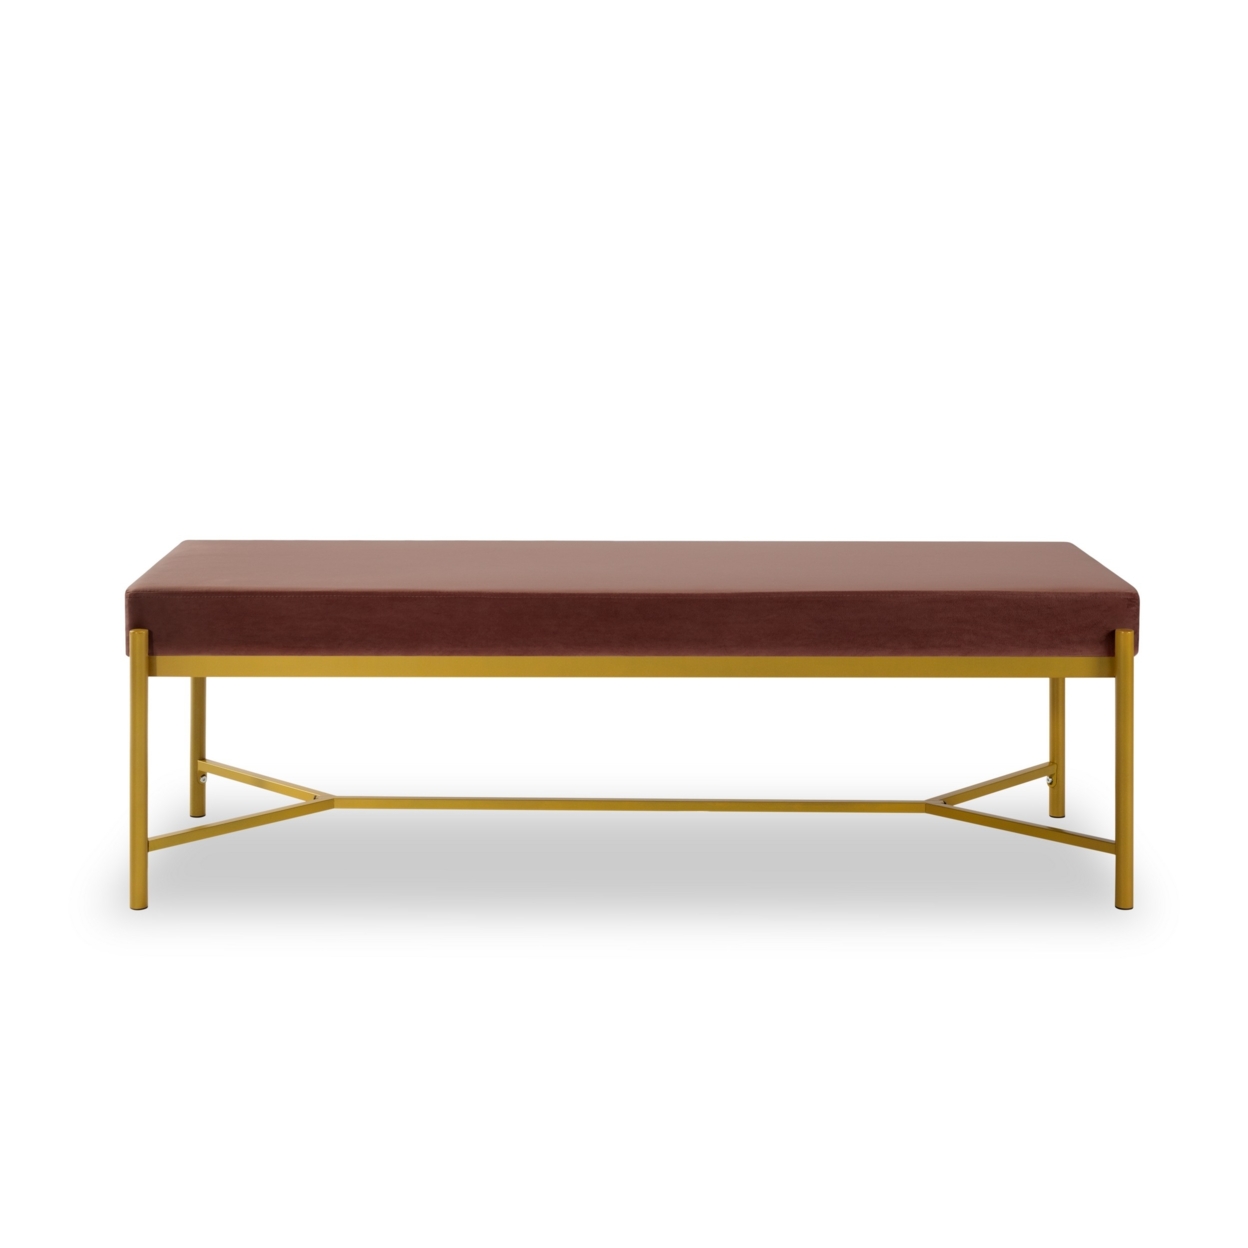 Lola 55 Inch Modern Foyer Bench, Dark Rose Velvet Seat And Gold Metal Frame- Saltoro Sherpi